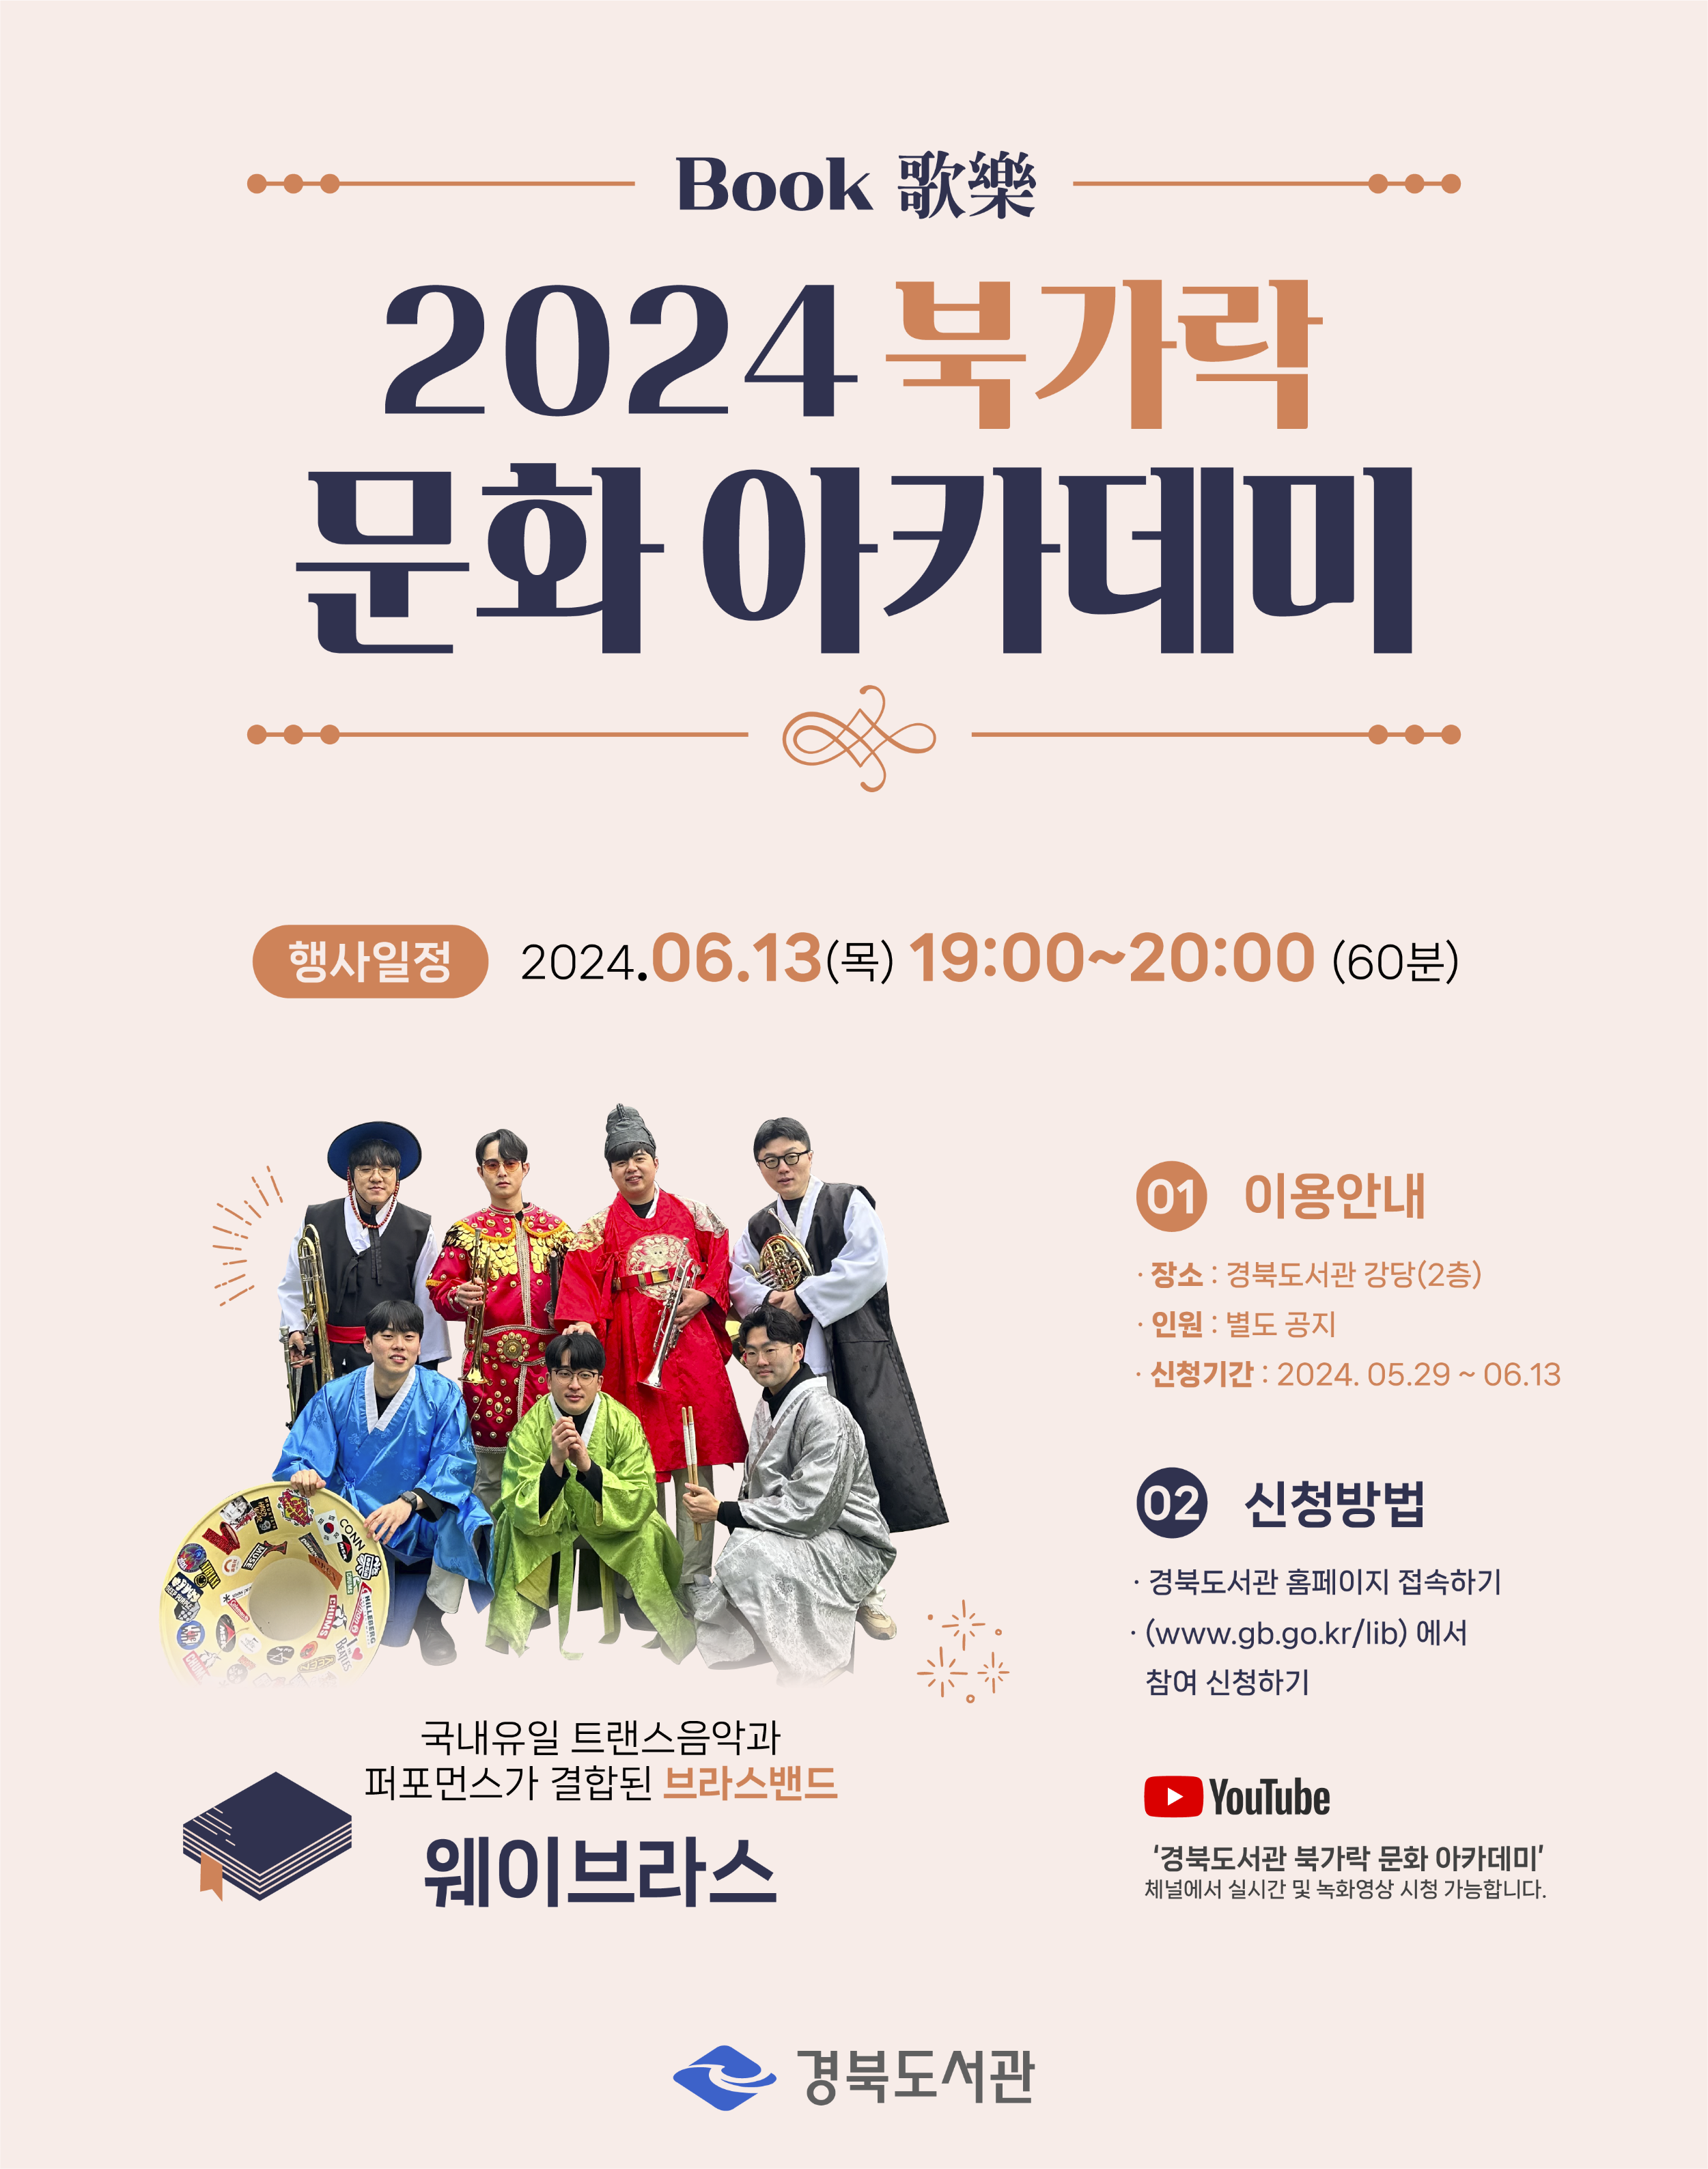 2024 북가락 문화 아카데미 개최(제4회차) - '금관앙상블의 힐링콘서트 ' 공연